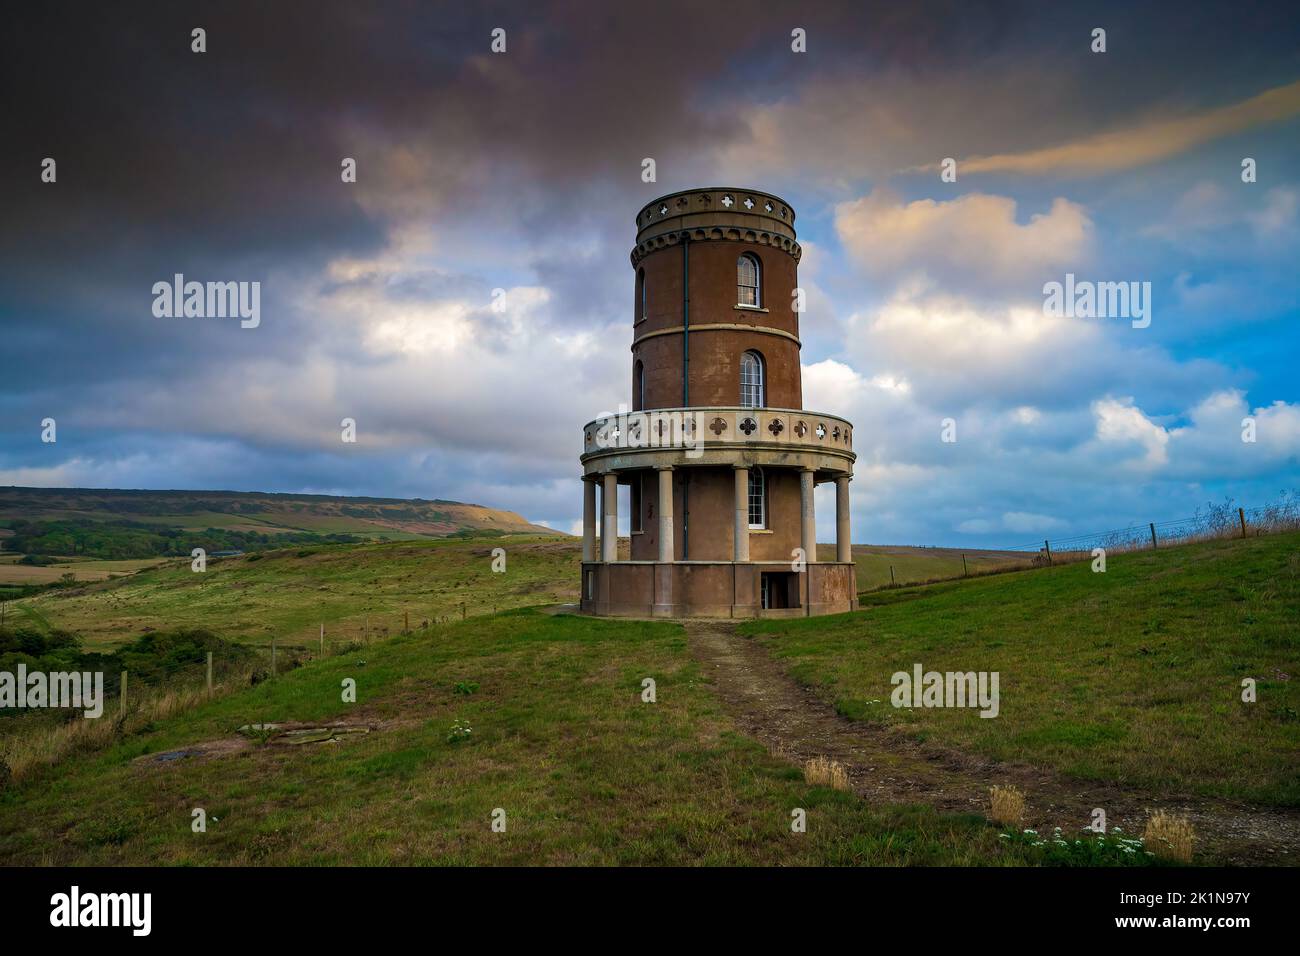 Clavell Tower, conosciuta anche come Clavell Folly o Kimmeridge Tower a Kimmeridge Bay, Doset, Inghilterra, Regno Unito Foto Stock